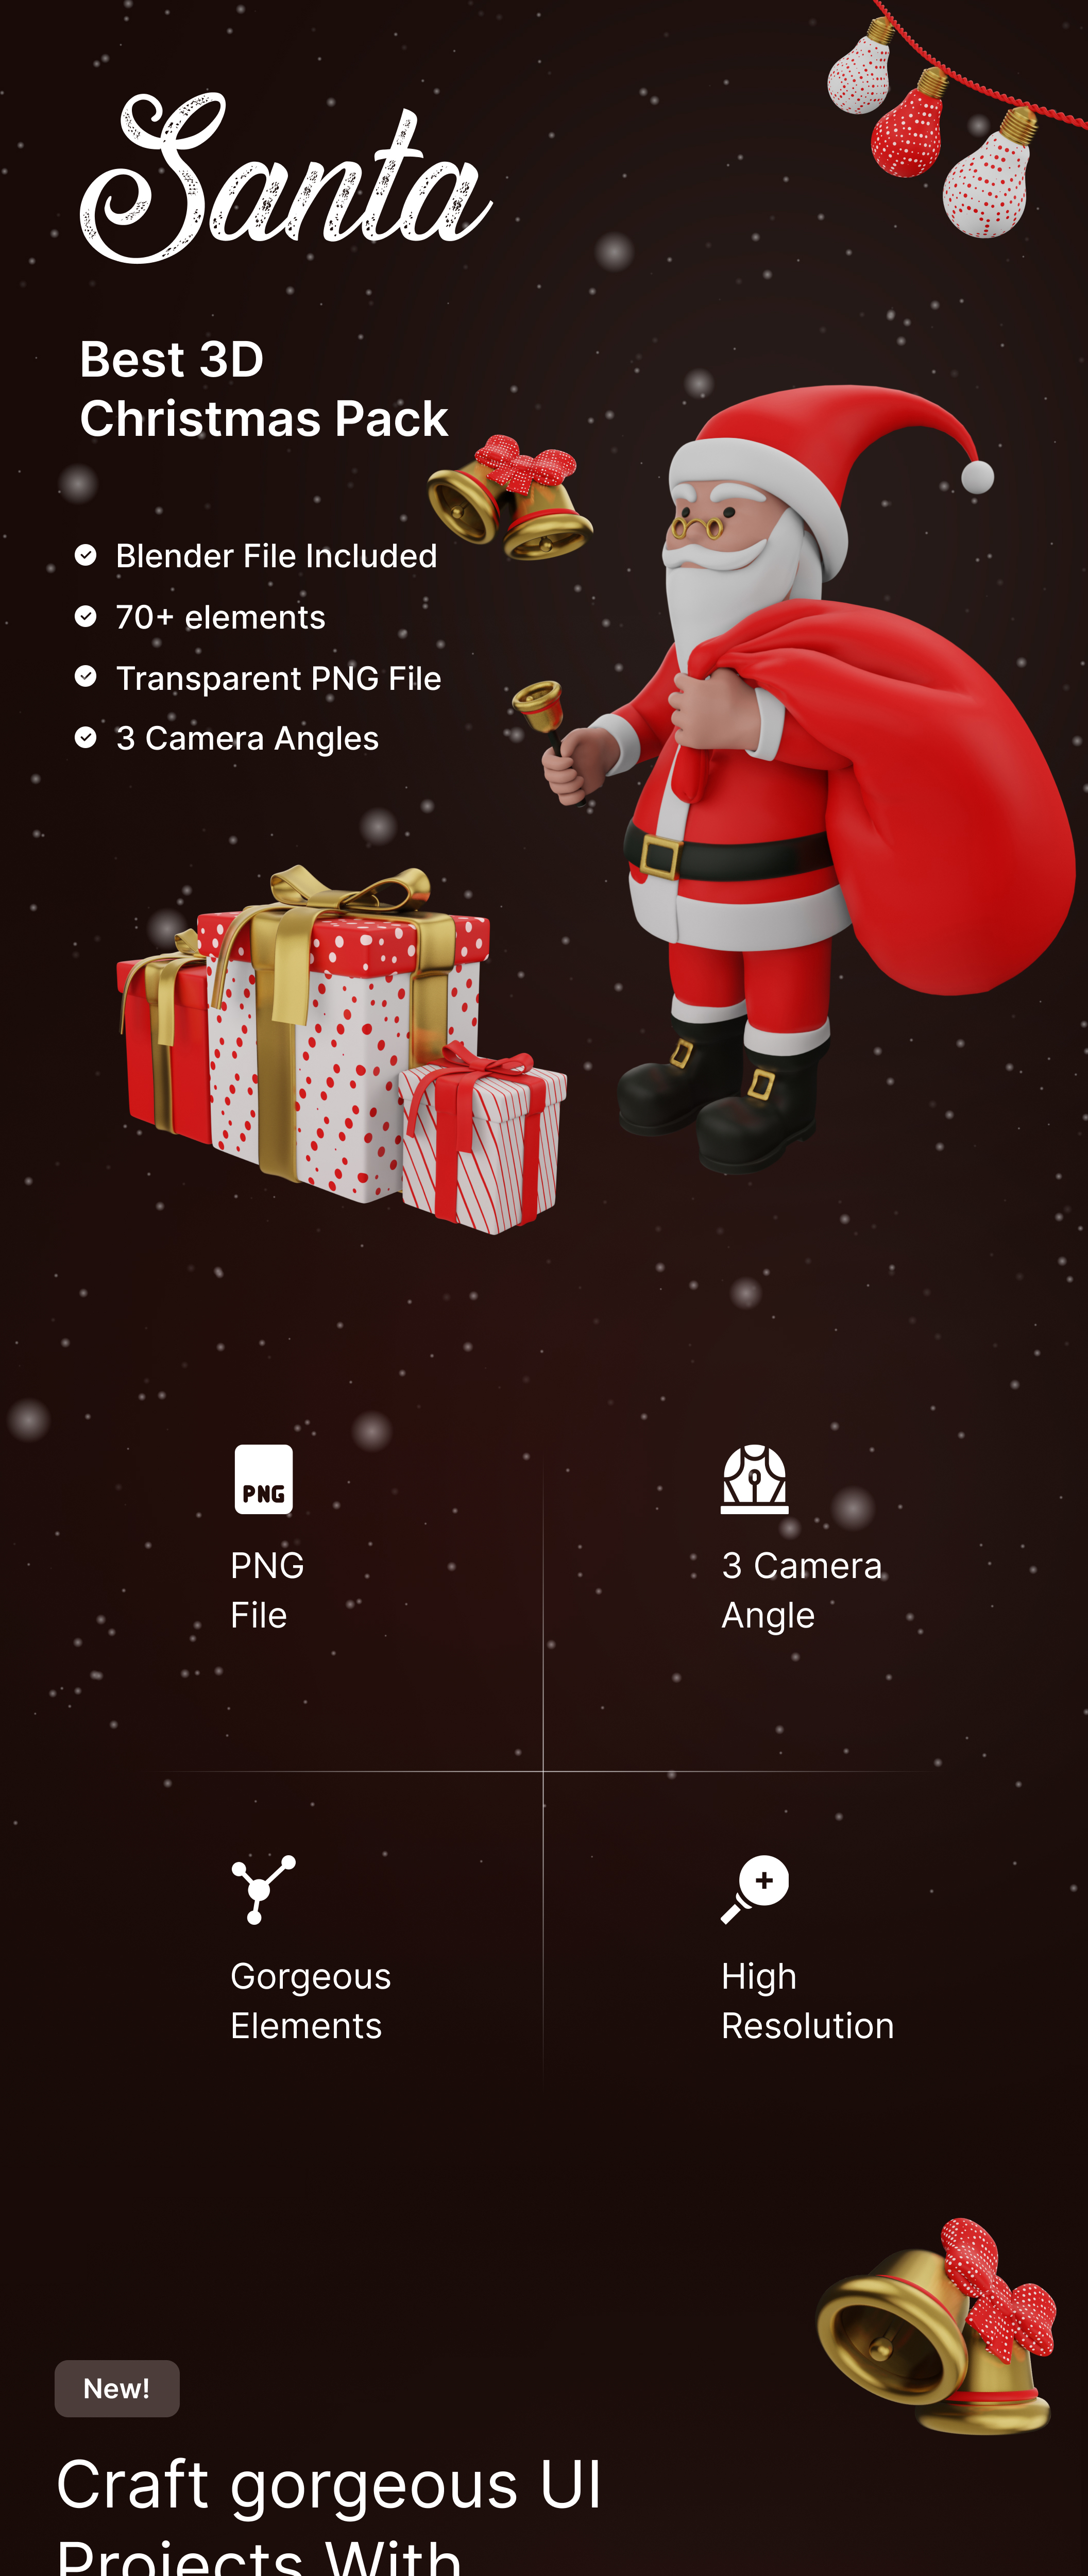 Santa-Best Christmas 3D Models-6.jpg